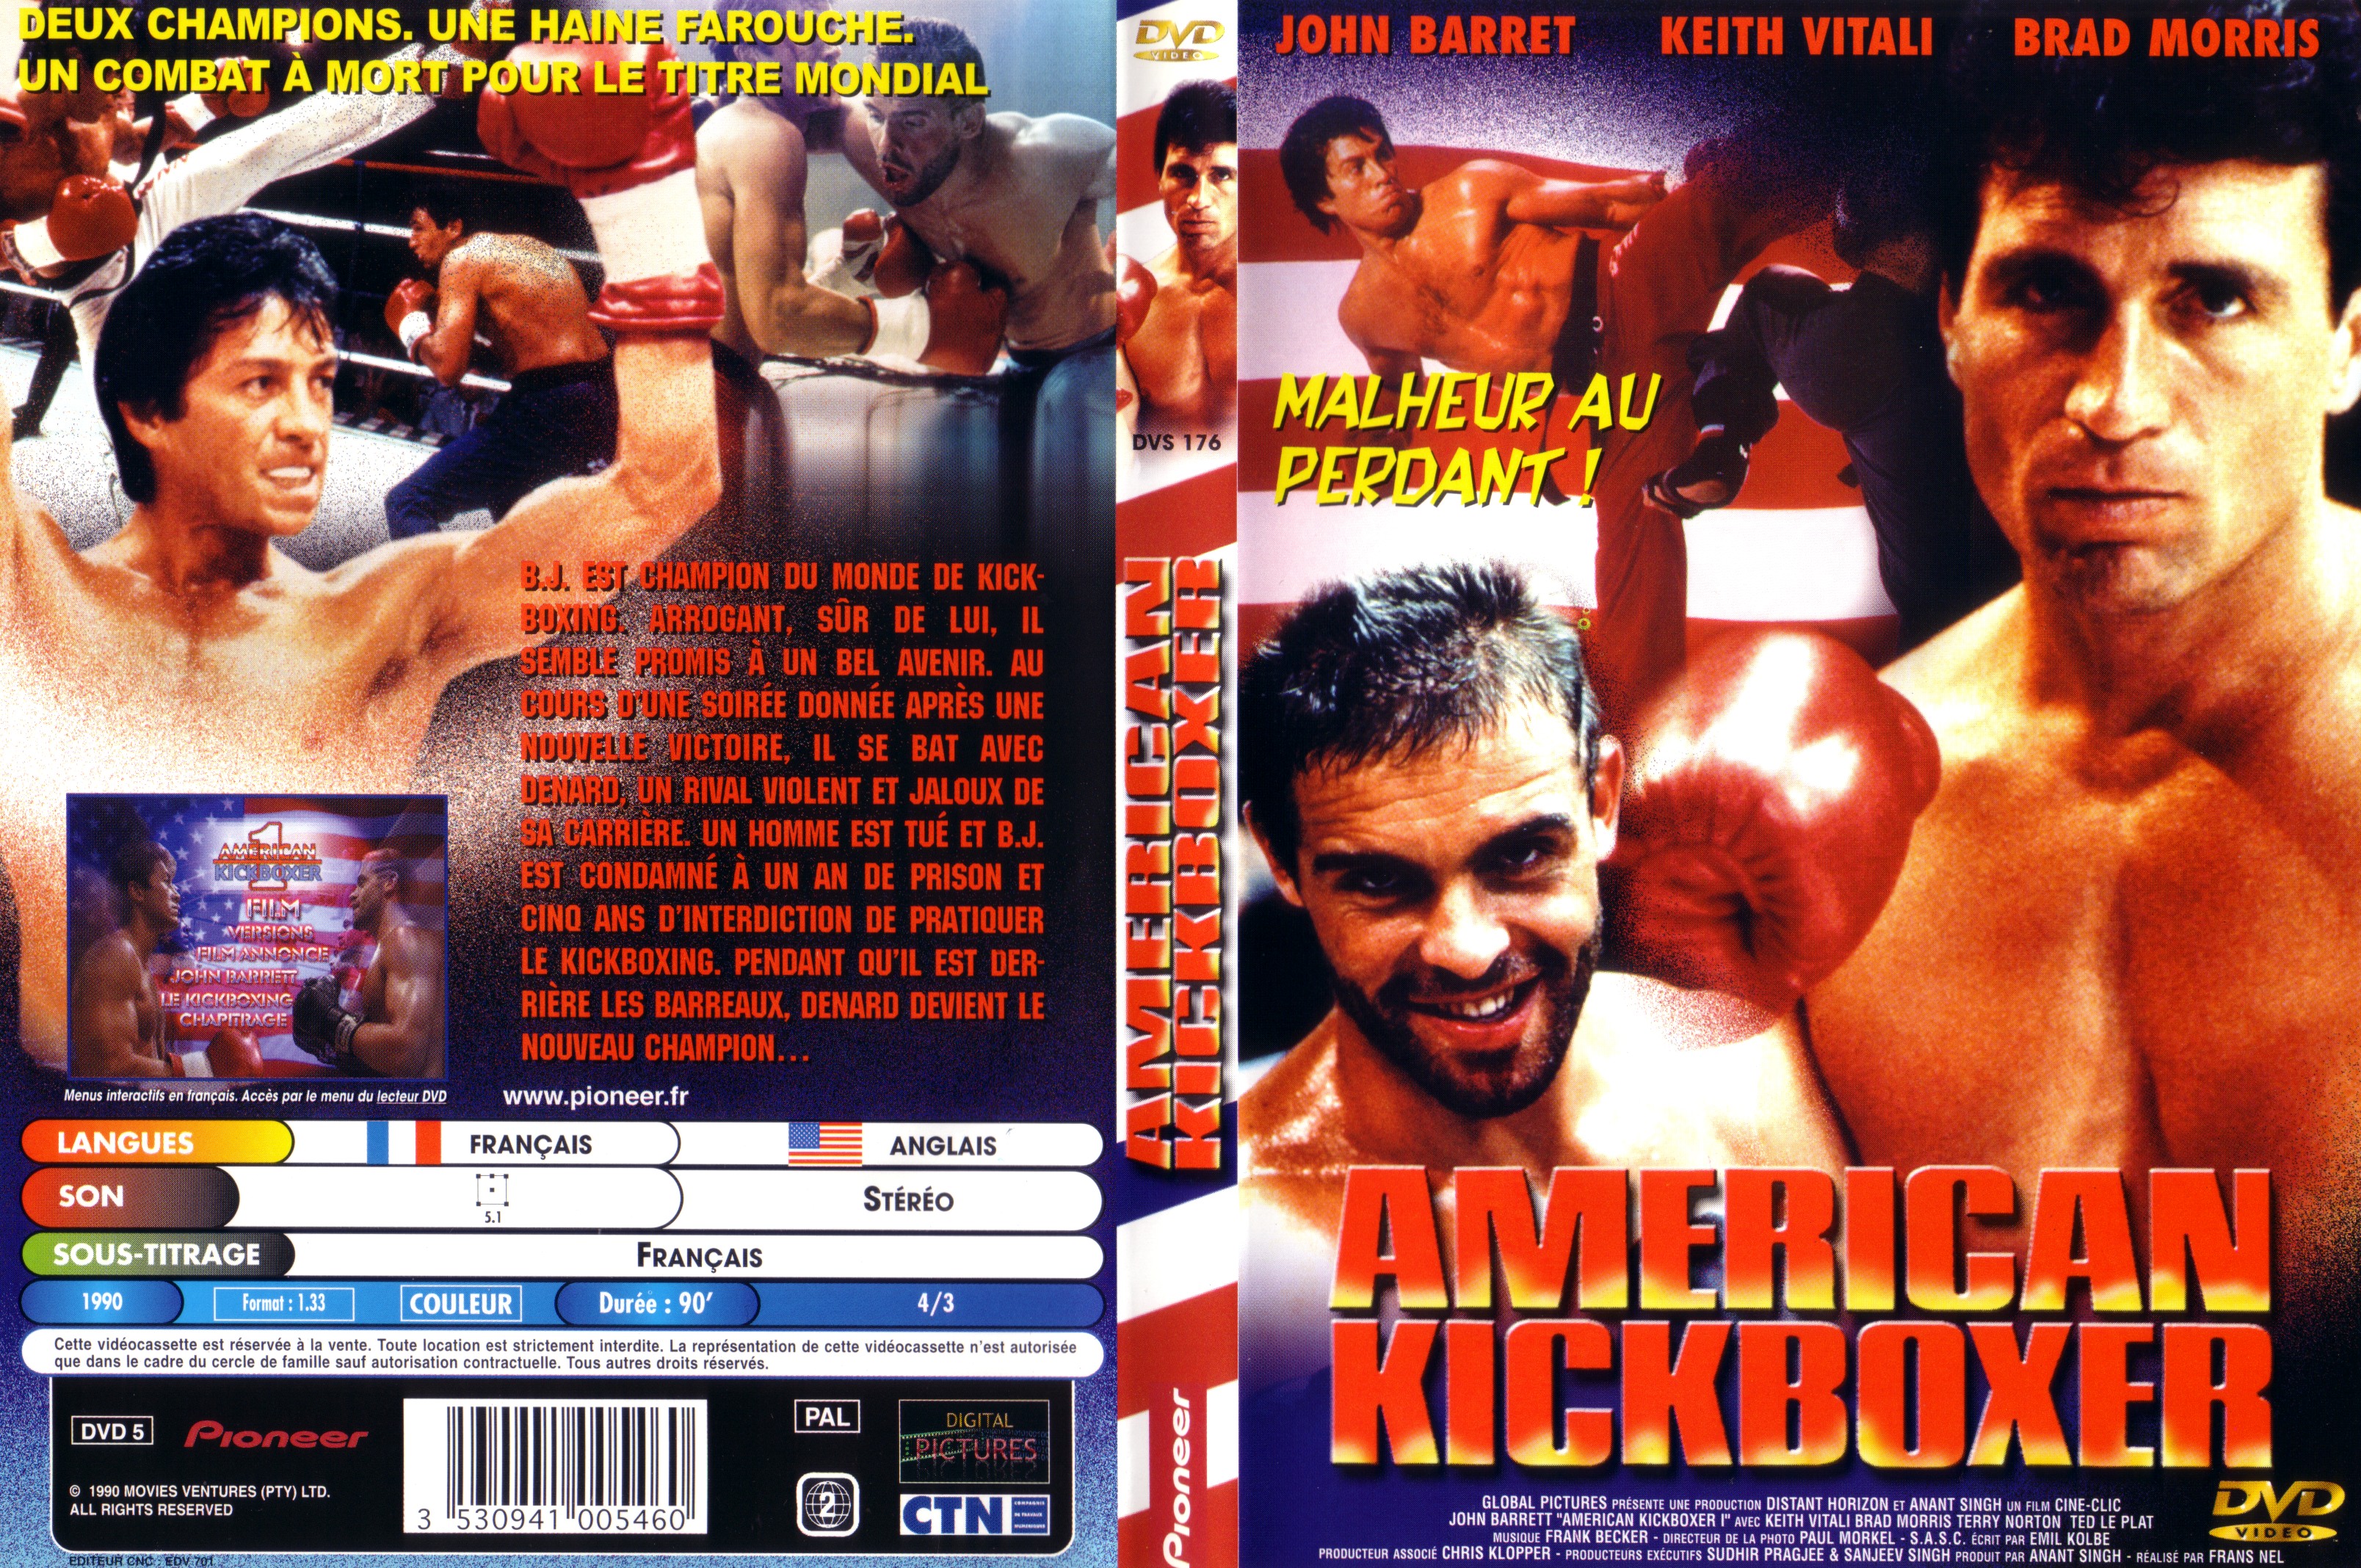 Jaquette DVD American kickboxer v2